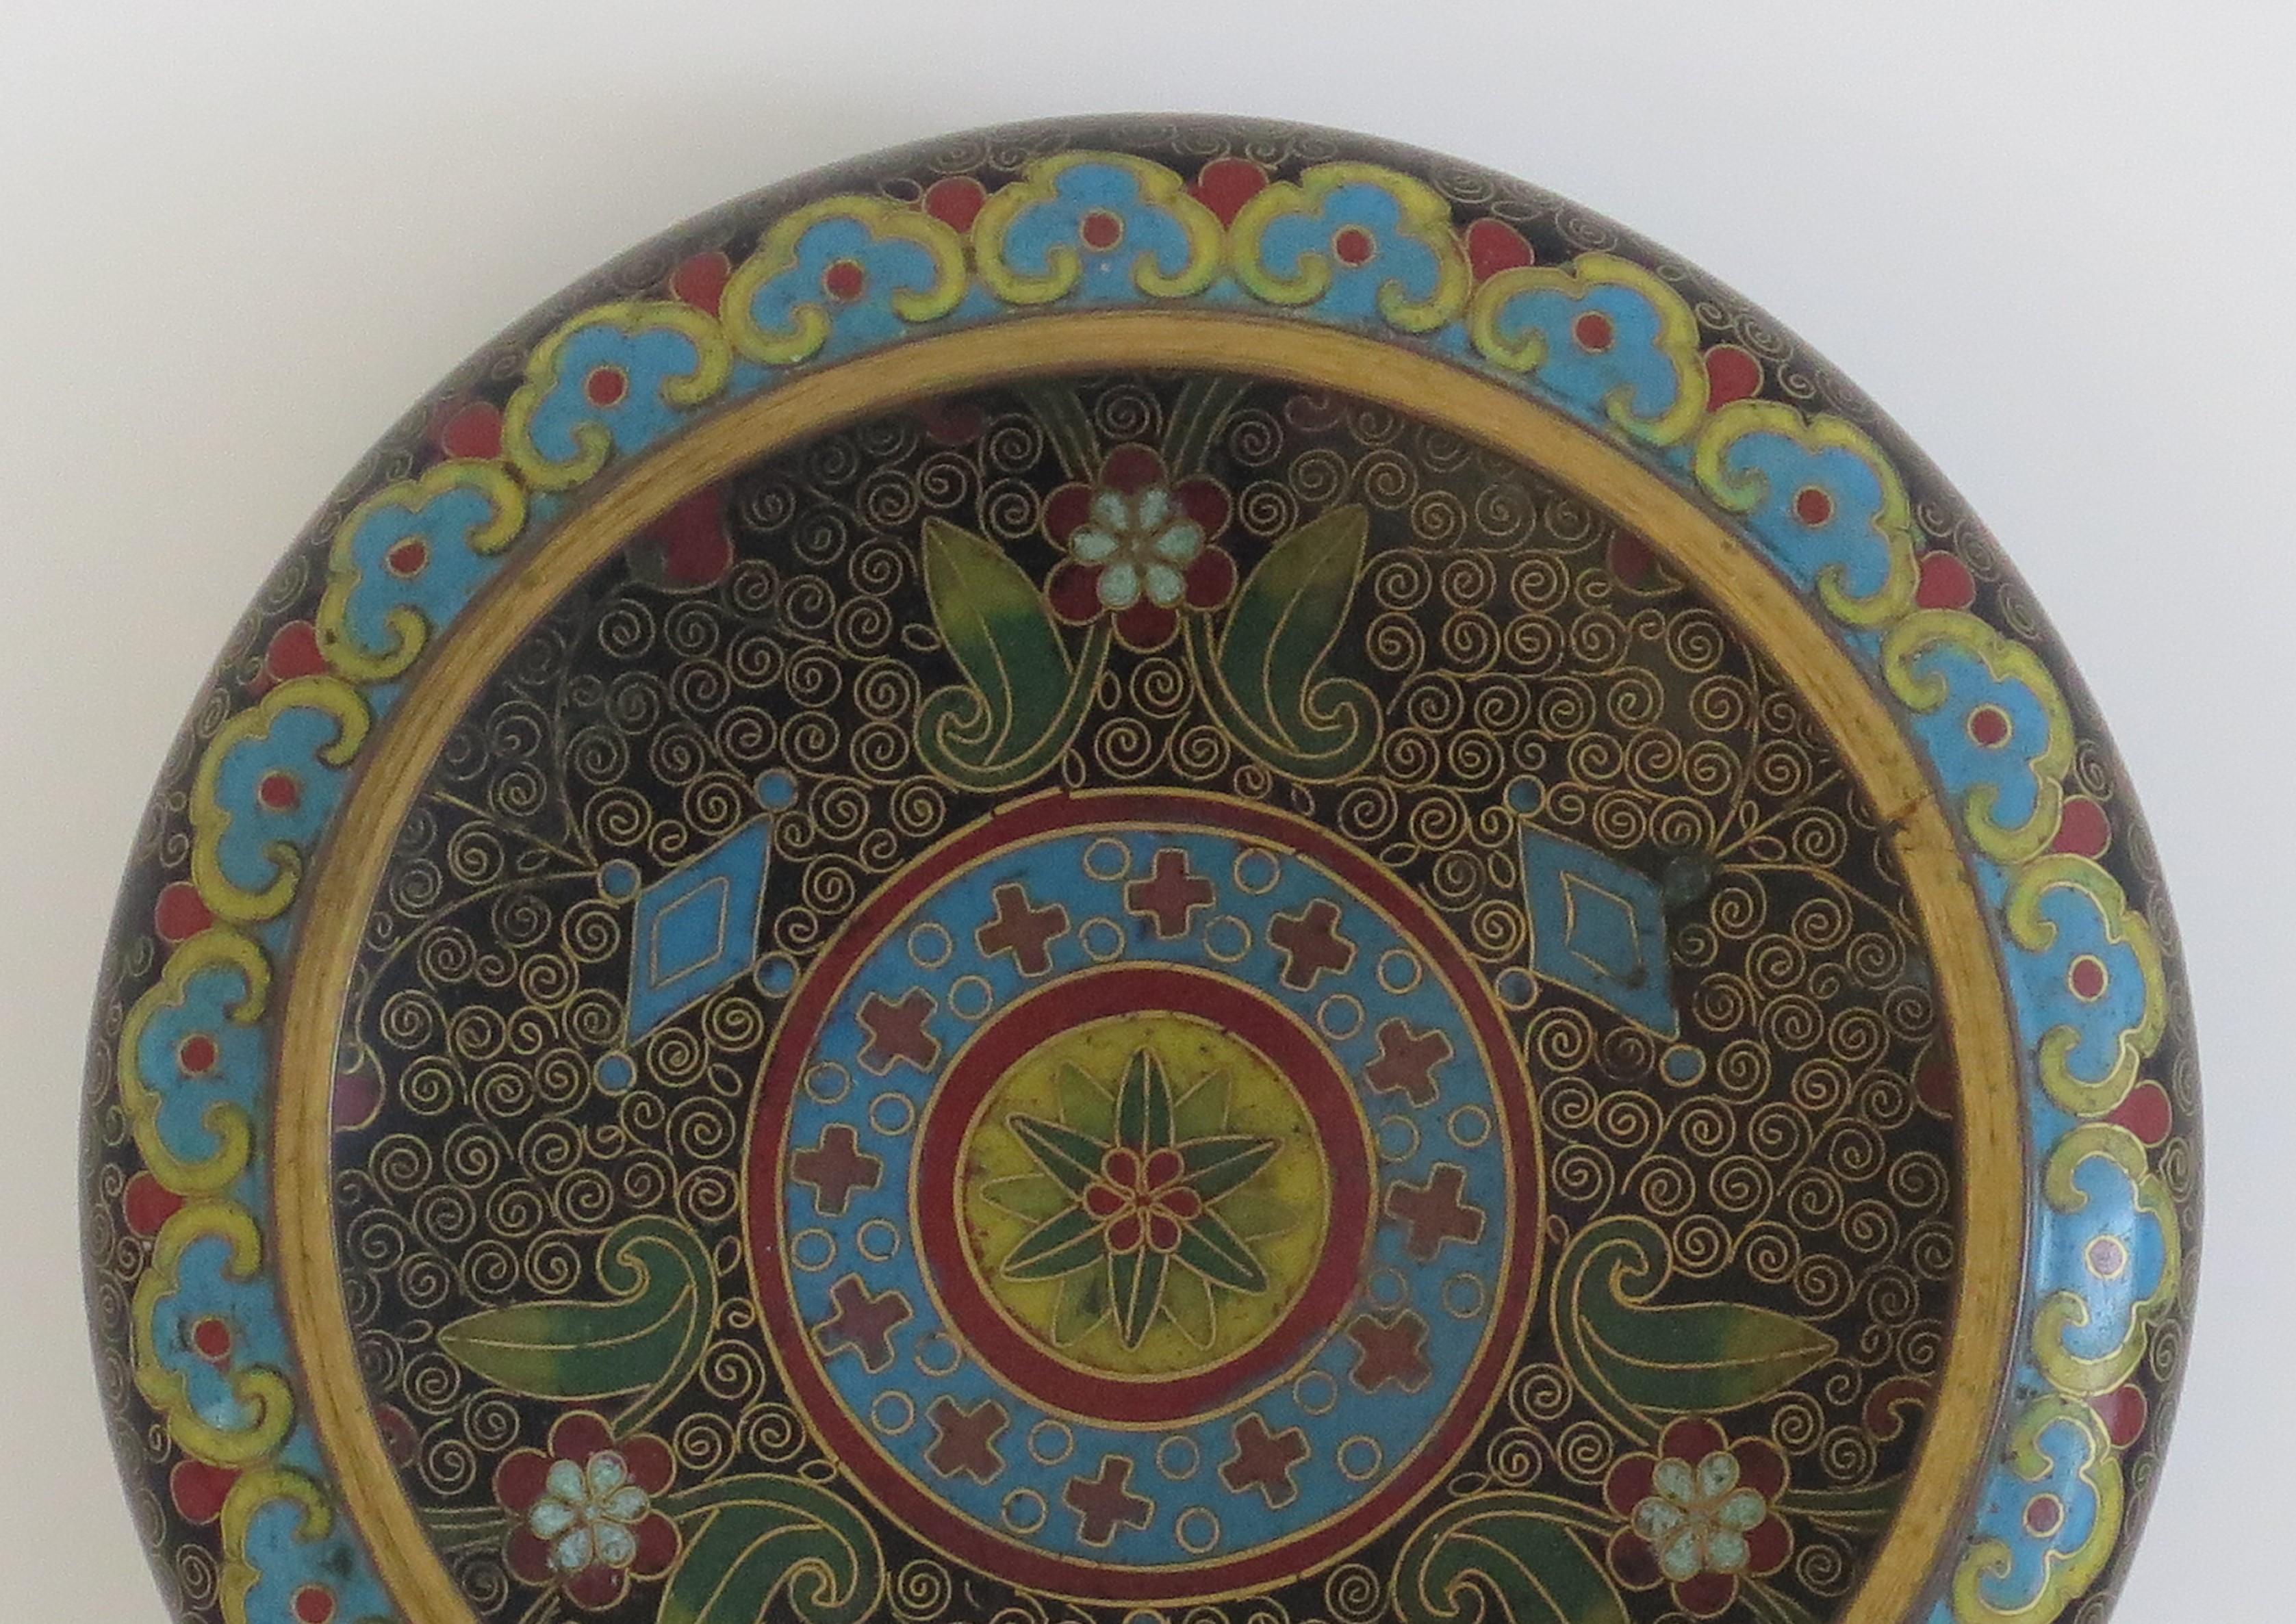 Cloissoné Chinese Cloisonné Bowl with Ruji Head Borders 'B', Qing, circa 1840